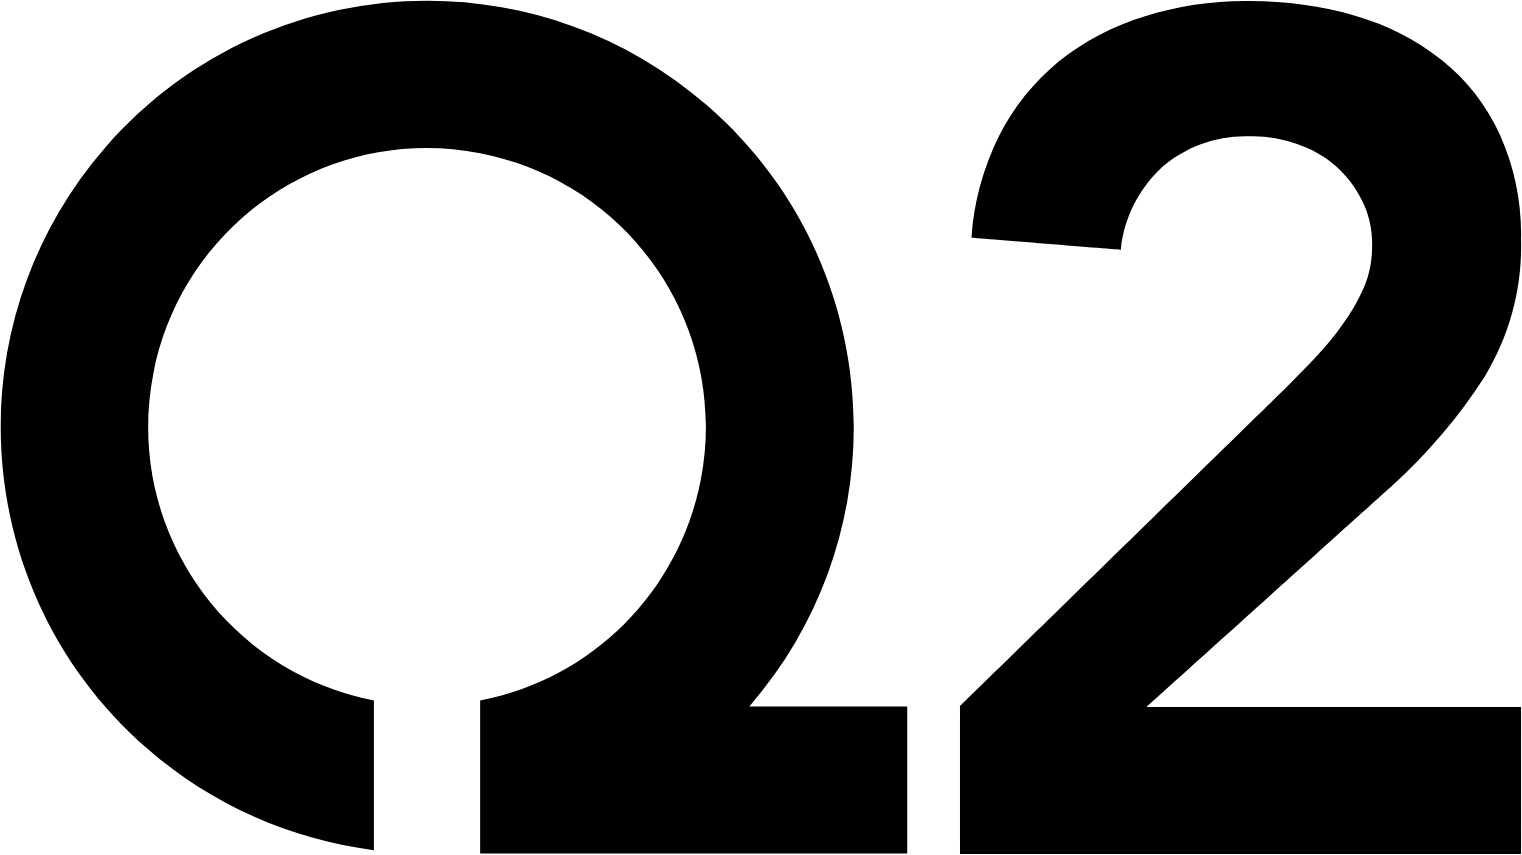 Q2 logo (transparent PNG)